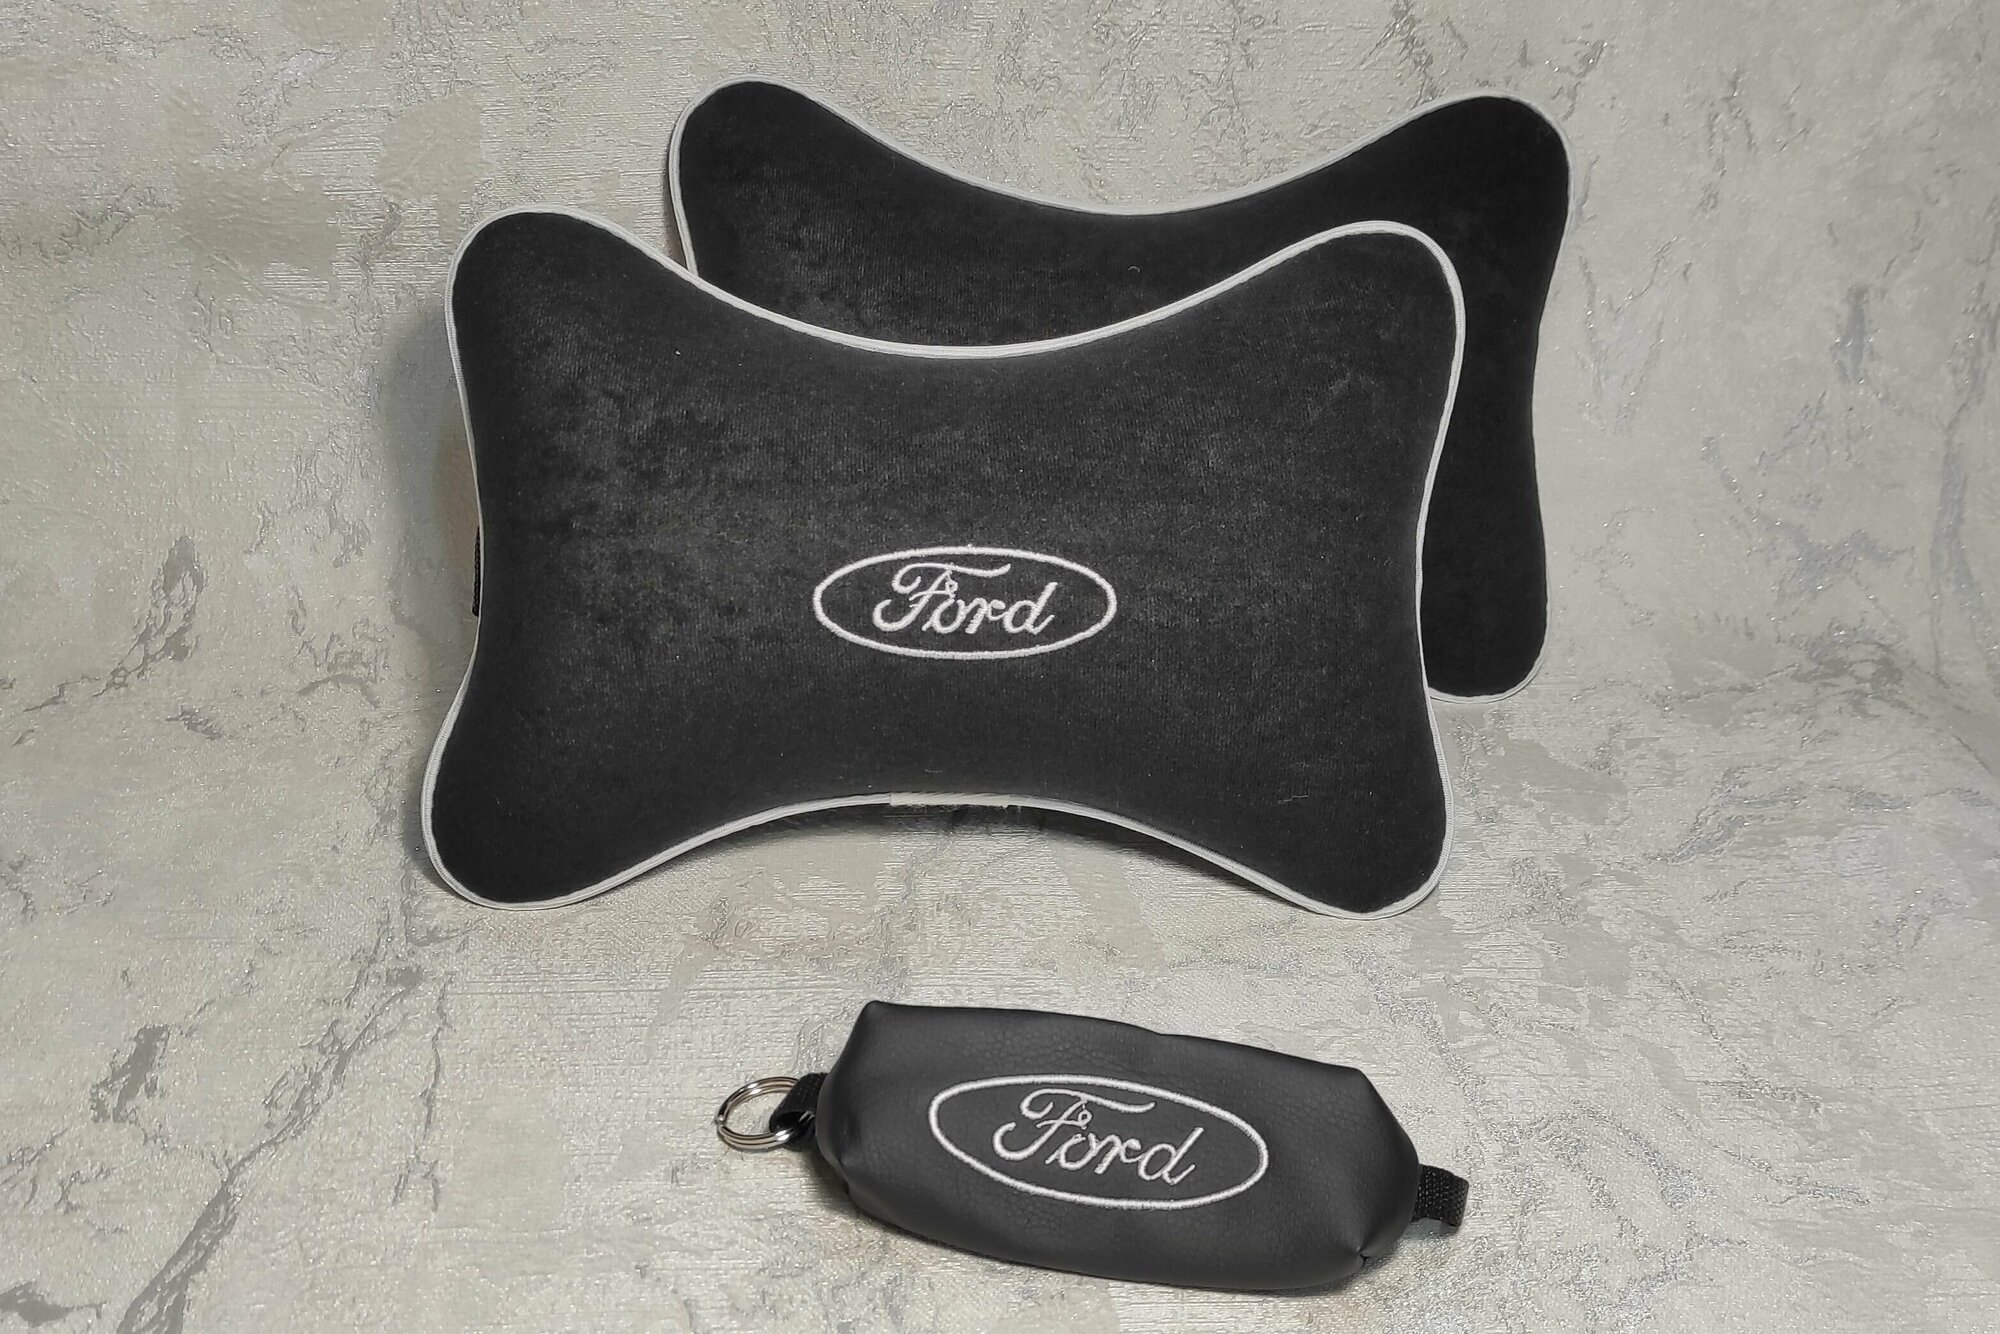 Подарочный набор: подушка на подголовник из велюра и ключница с логотипом FORD, комплект 3 предмета